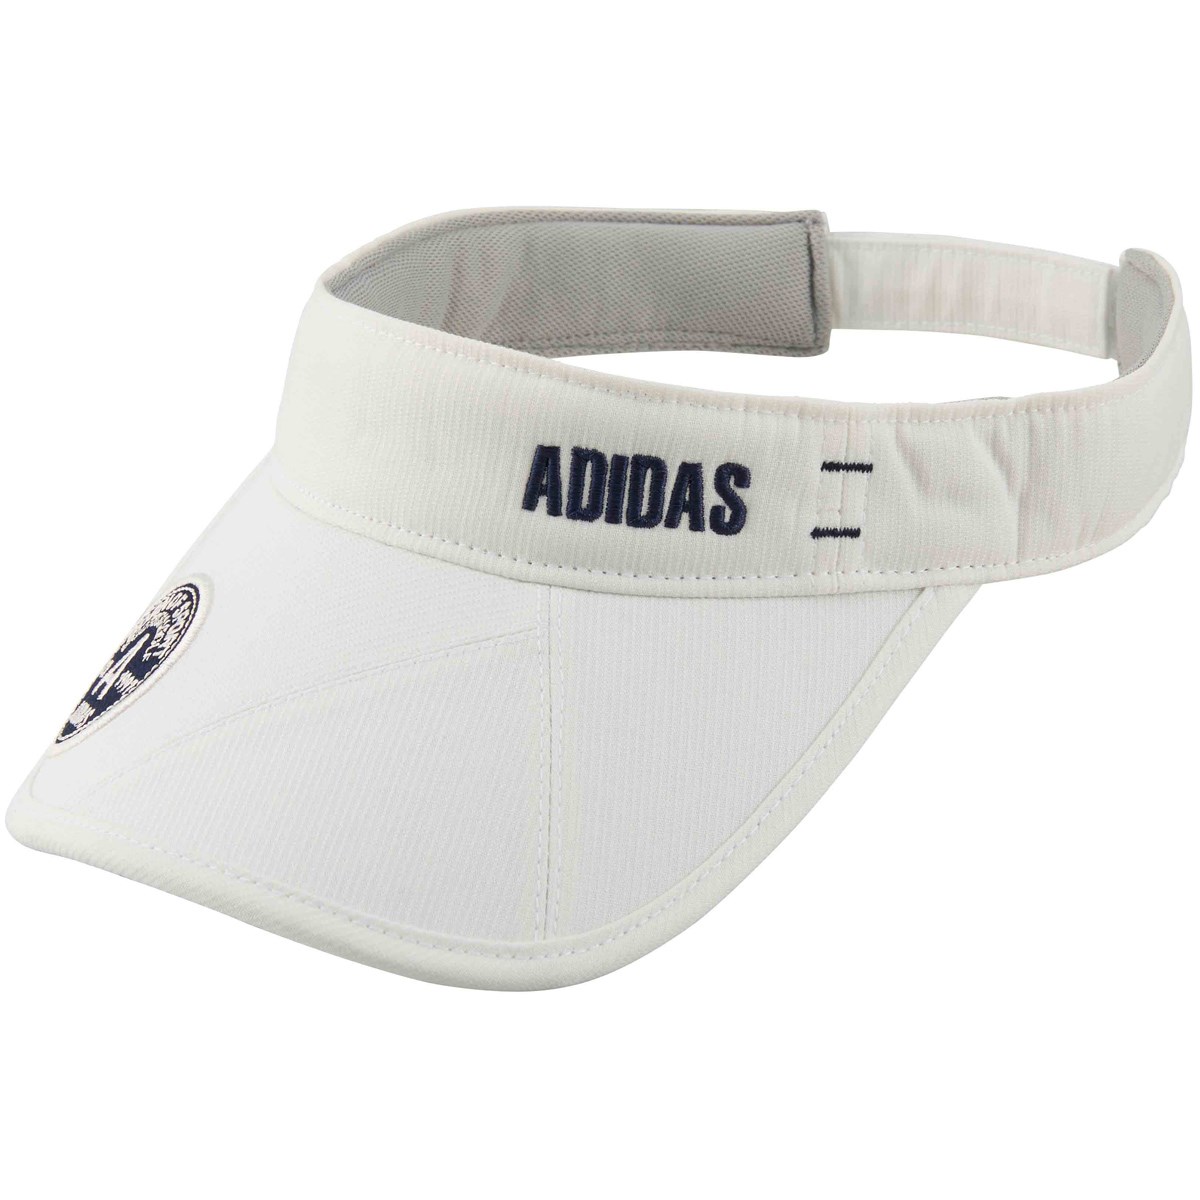 [2018年モデル] アディダス ADICROSS ストライプサンバイザー ゴルフウェア 帽子の大画像